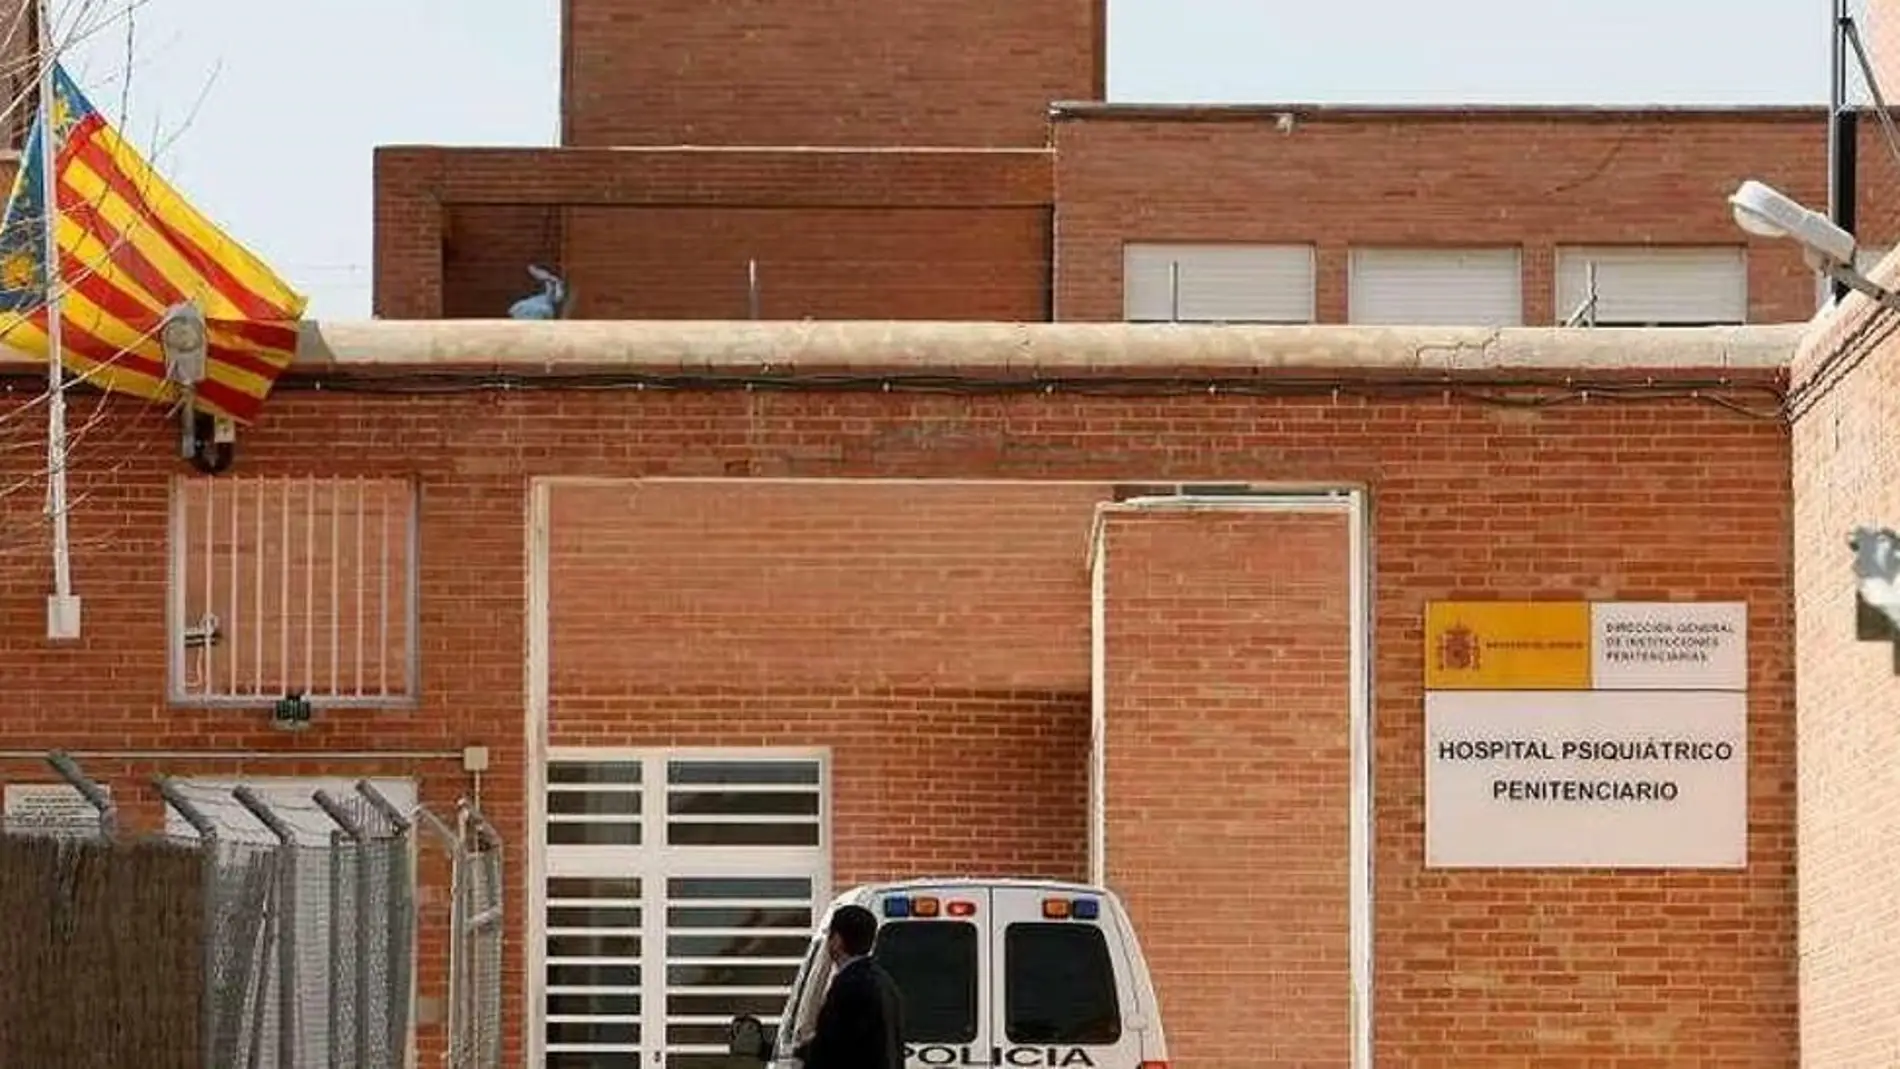 Psiquiátrico Penitenciario de Alicante 